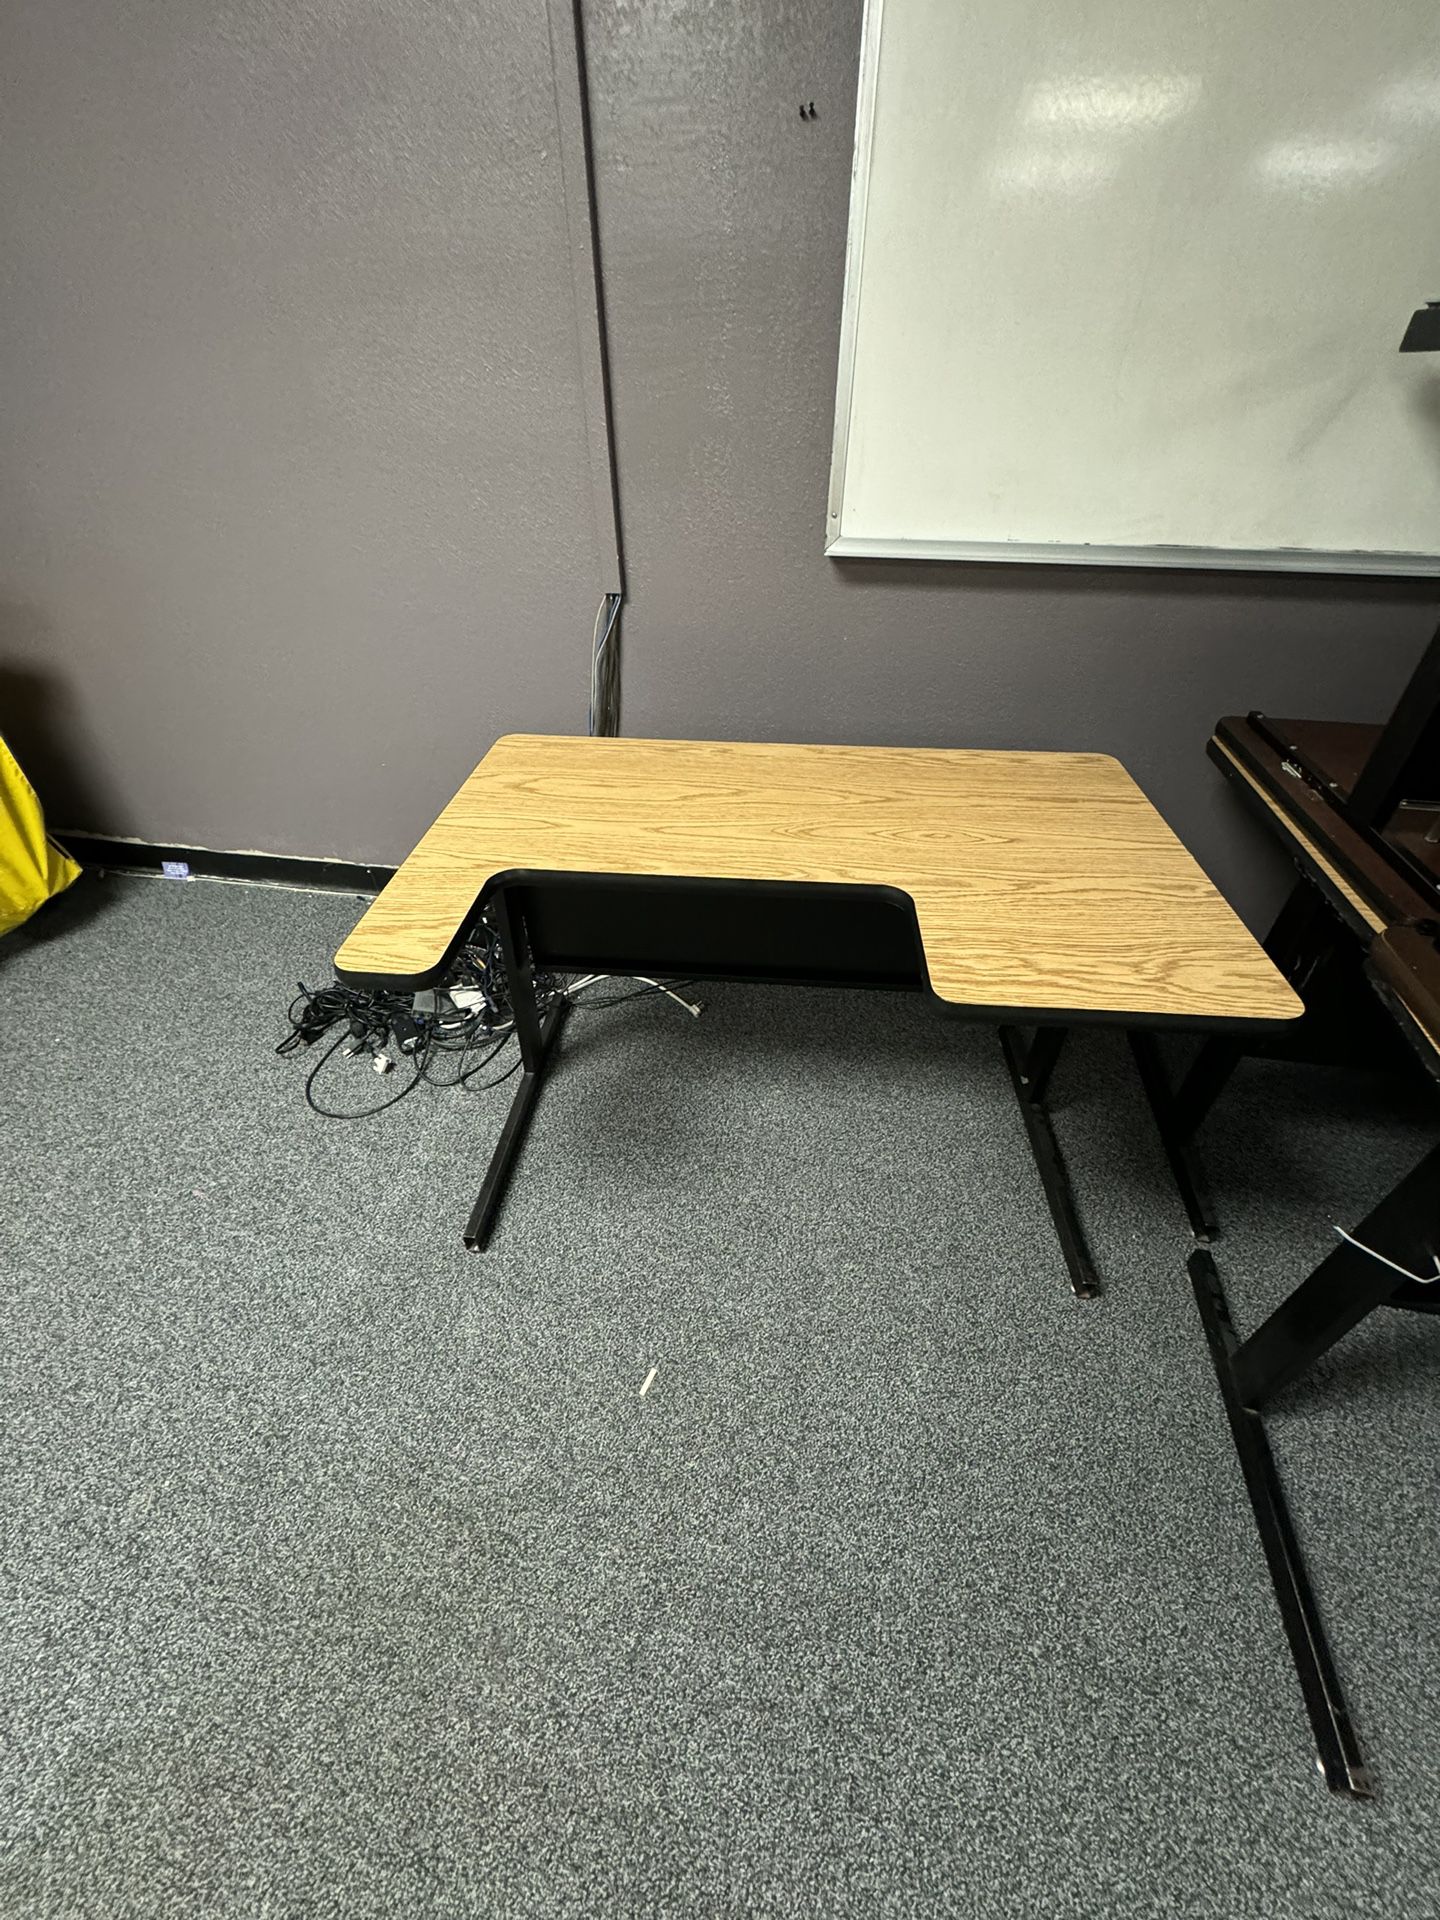 4ft Computer Desk